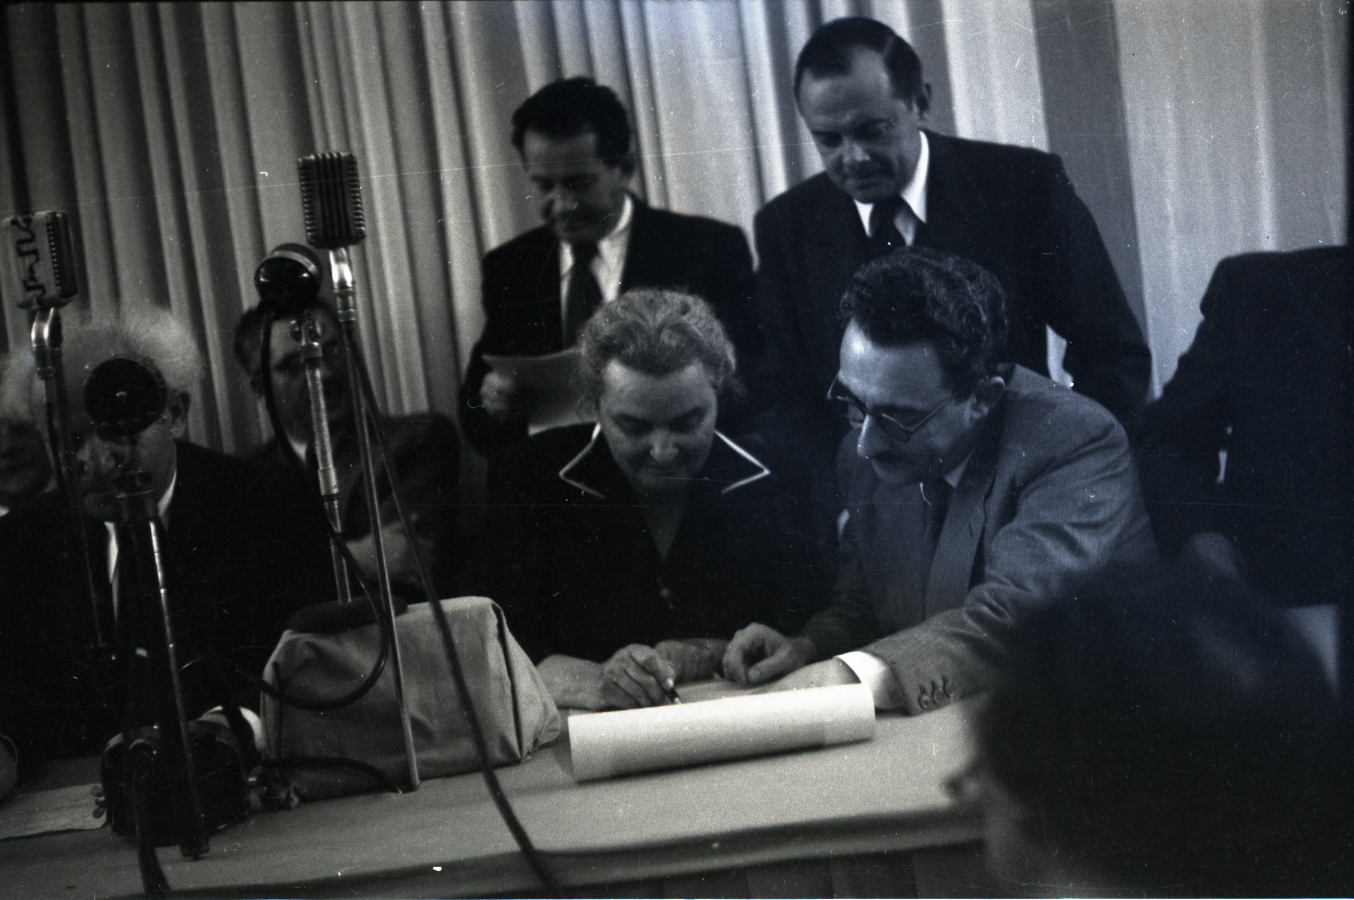 רחל כהן כגן, חברת הוועד הלאומי ומועצת העם הזמנית, חותמת על מגילת העצמאות. "חתימת ידינו לעדות"